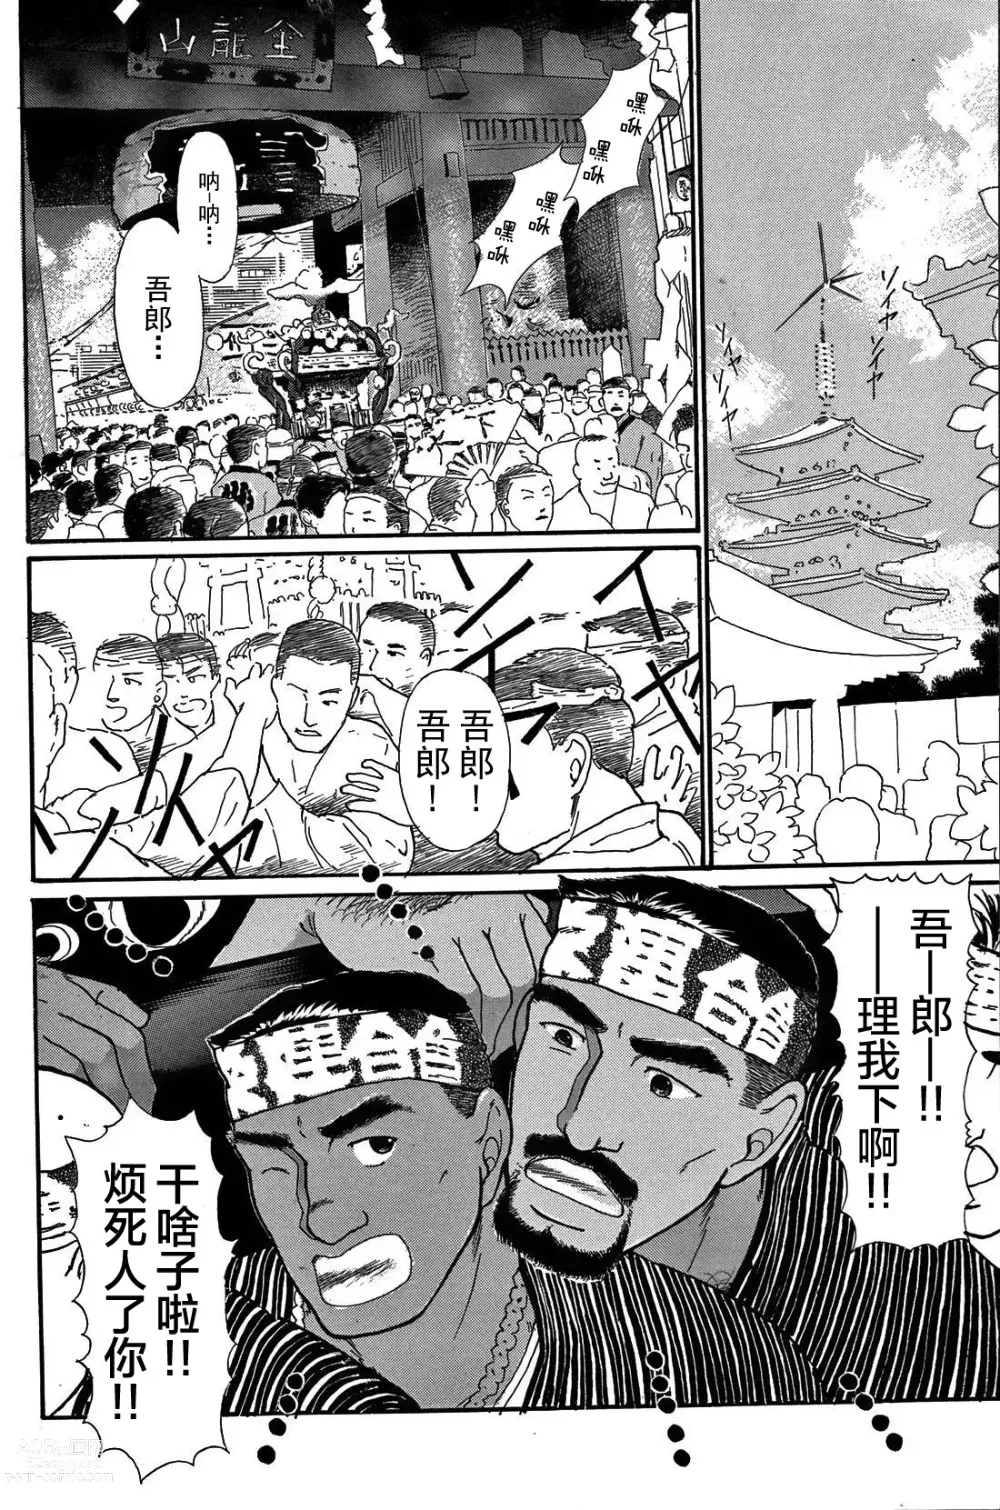 Page 3 of manga 纯情!! 第一章 「纯情」